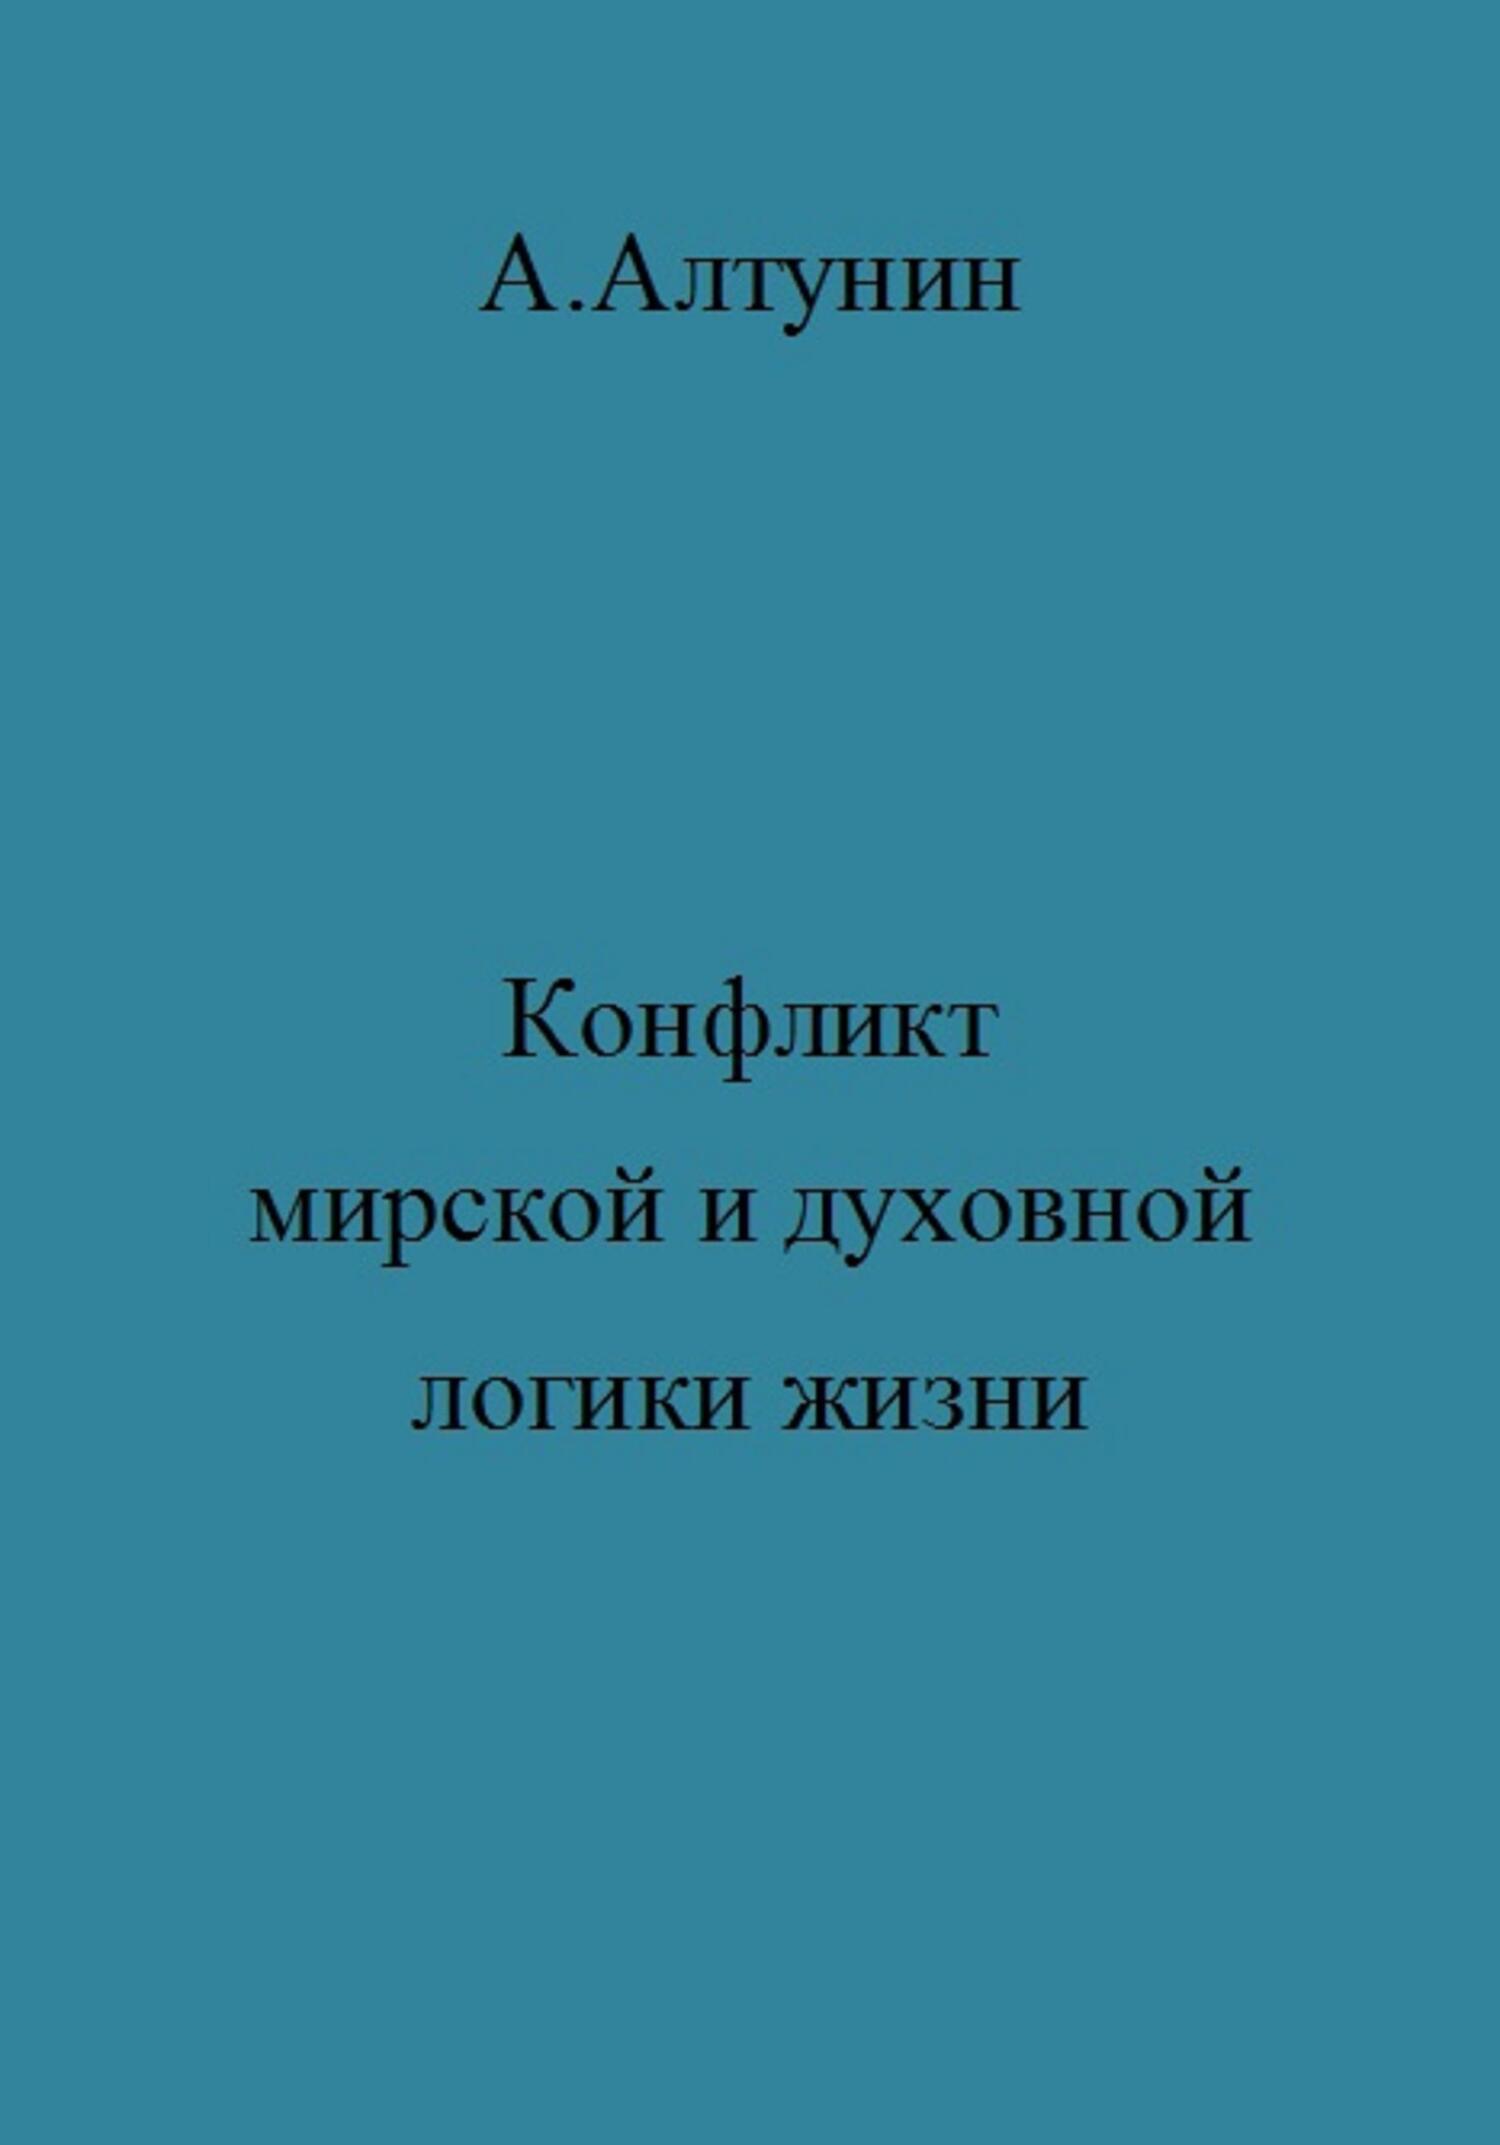 Конфликт мирской и духовной логики жизни - Александр Иванович Алтунин